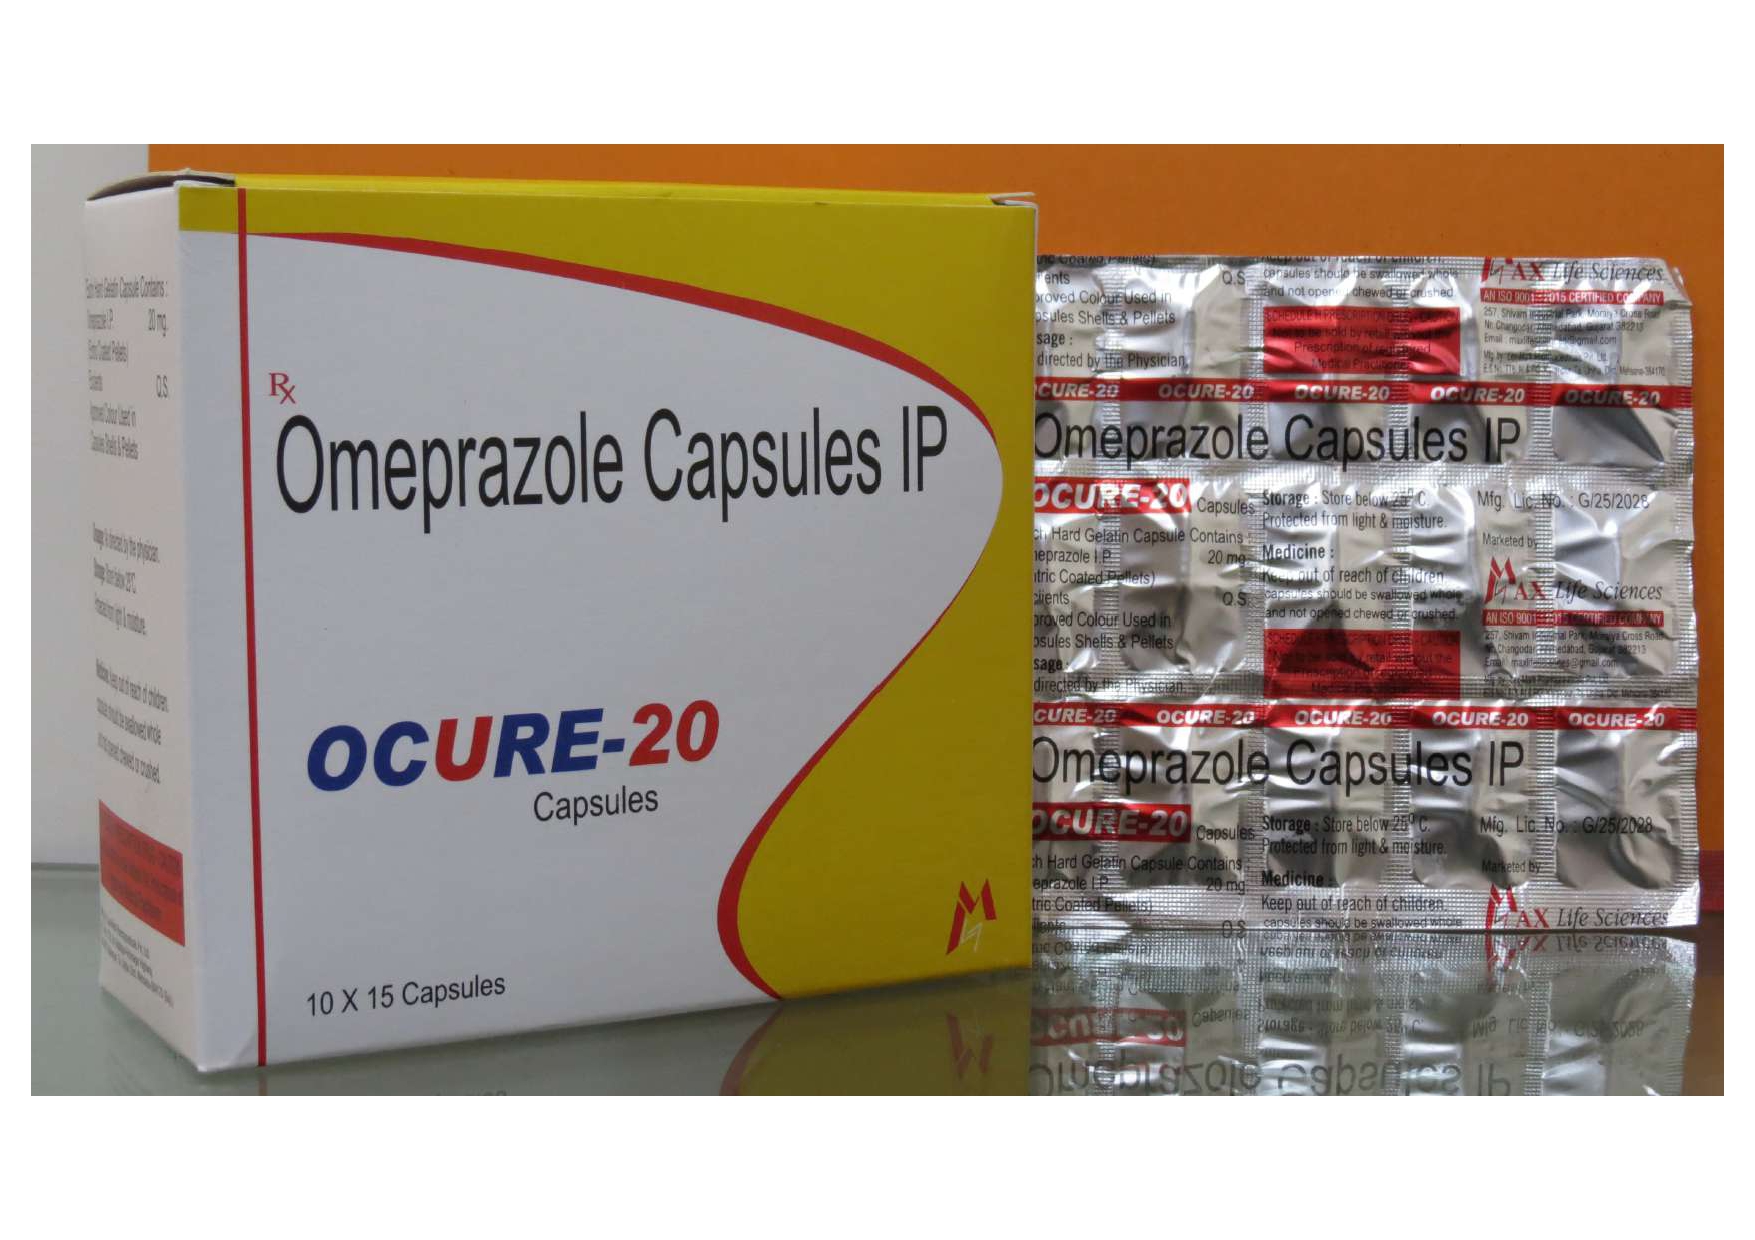 omeprazole 20mg capsules